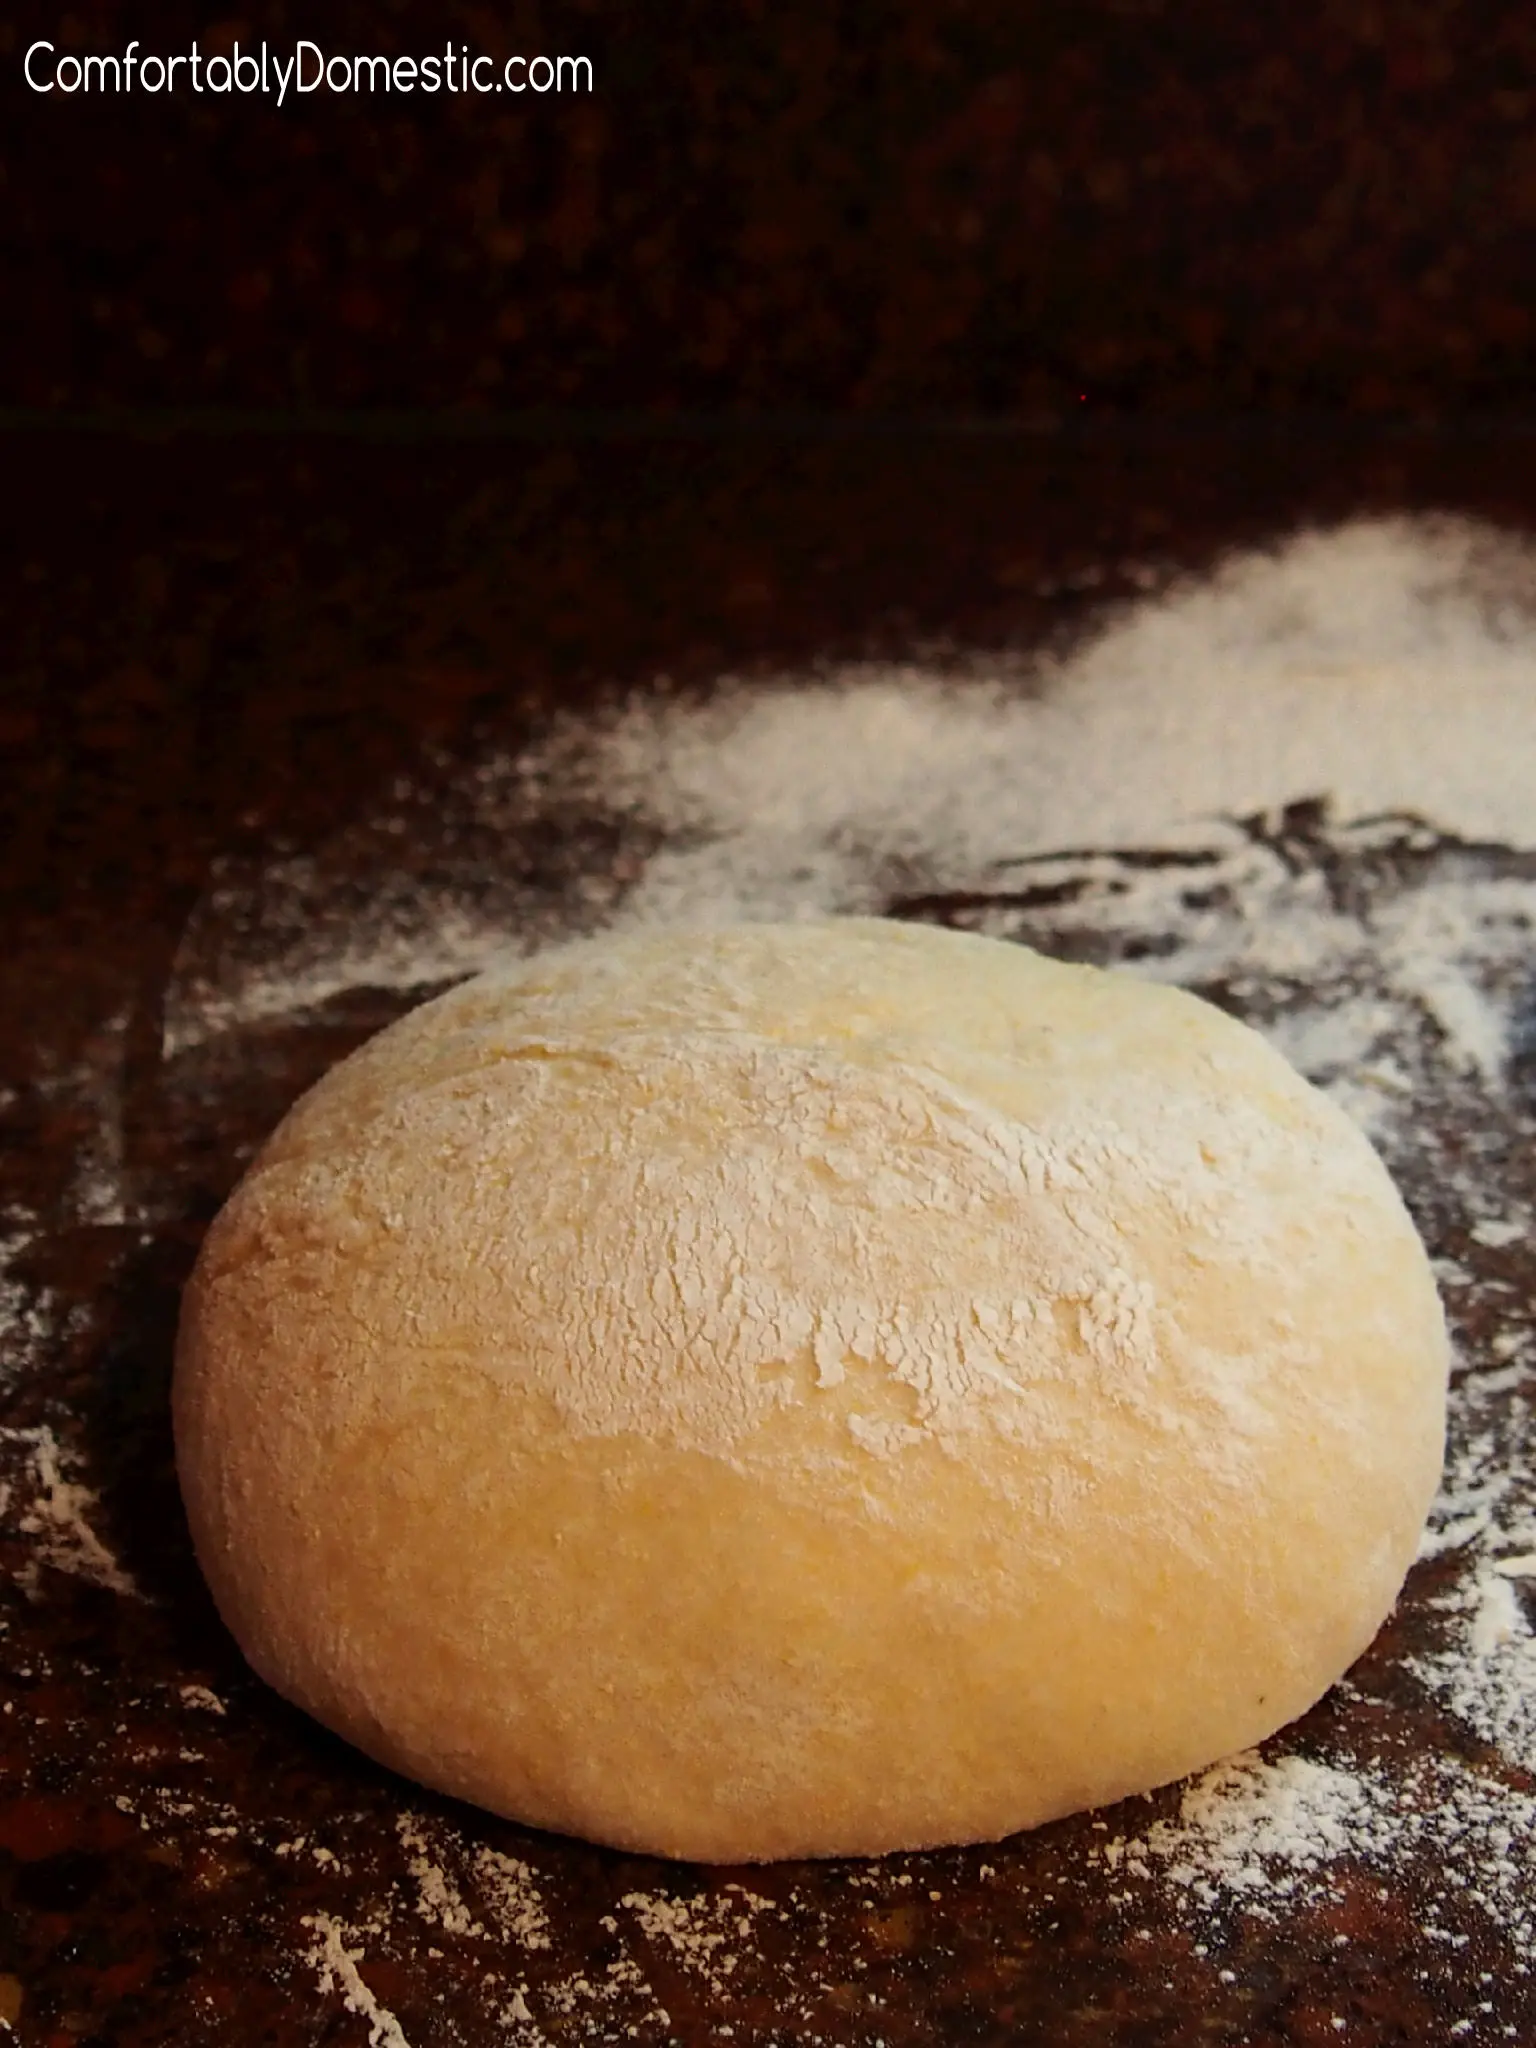 corn flour pizza dough - Can I use cornmeal instead of flour for pizza dough